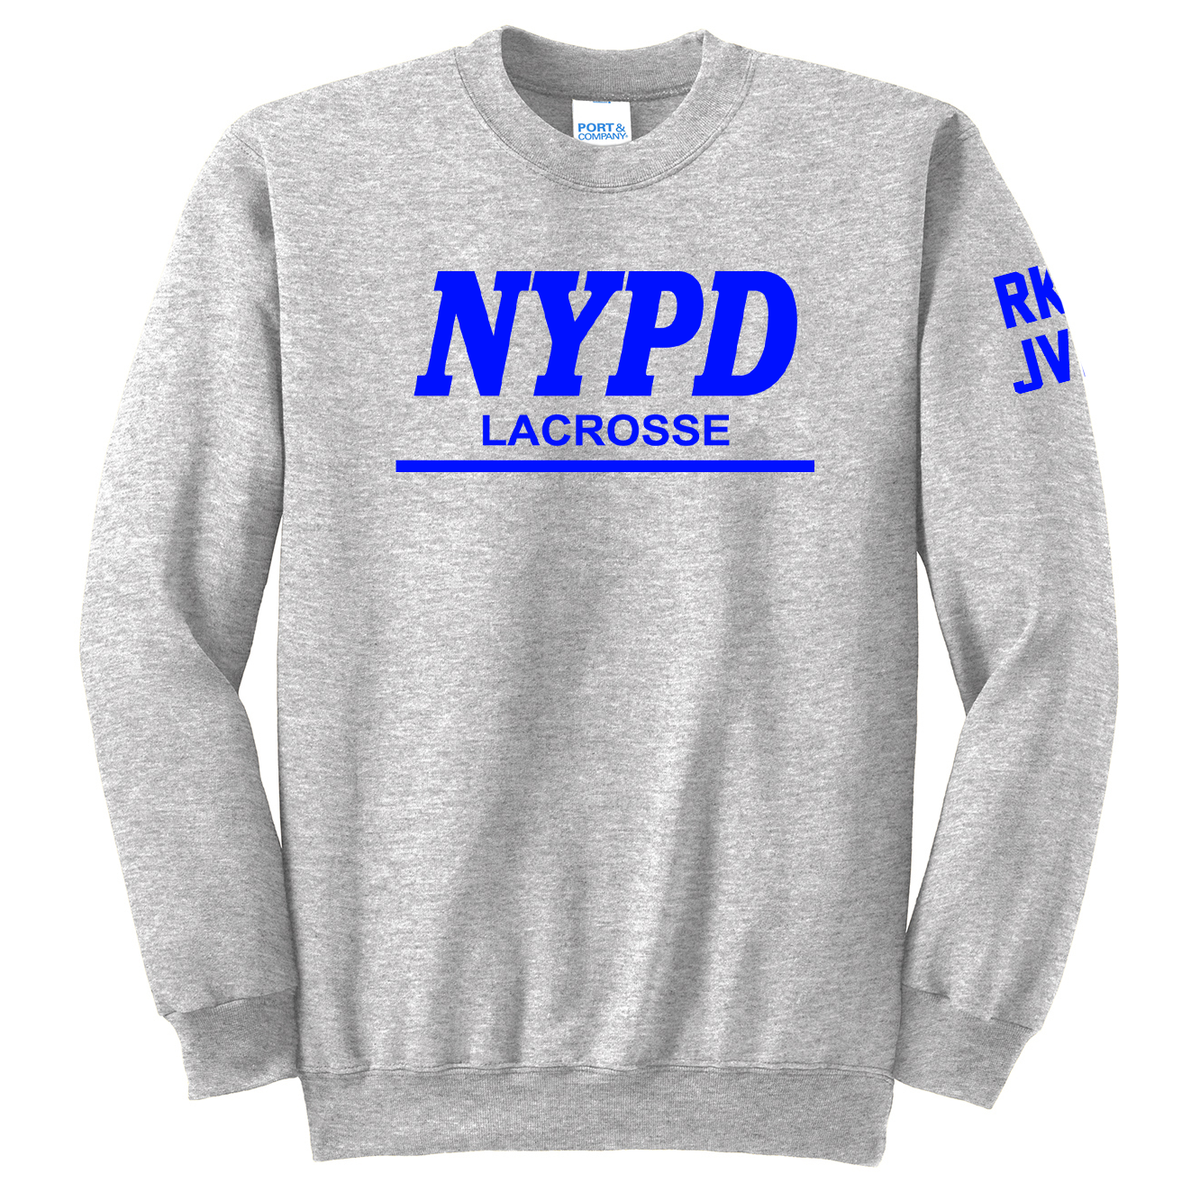 NYPD Lacrosse Crew Neck Sweater